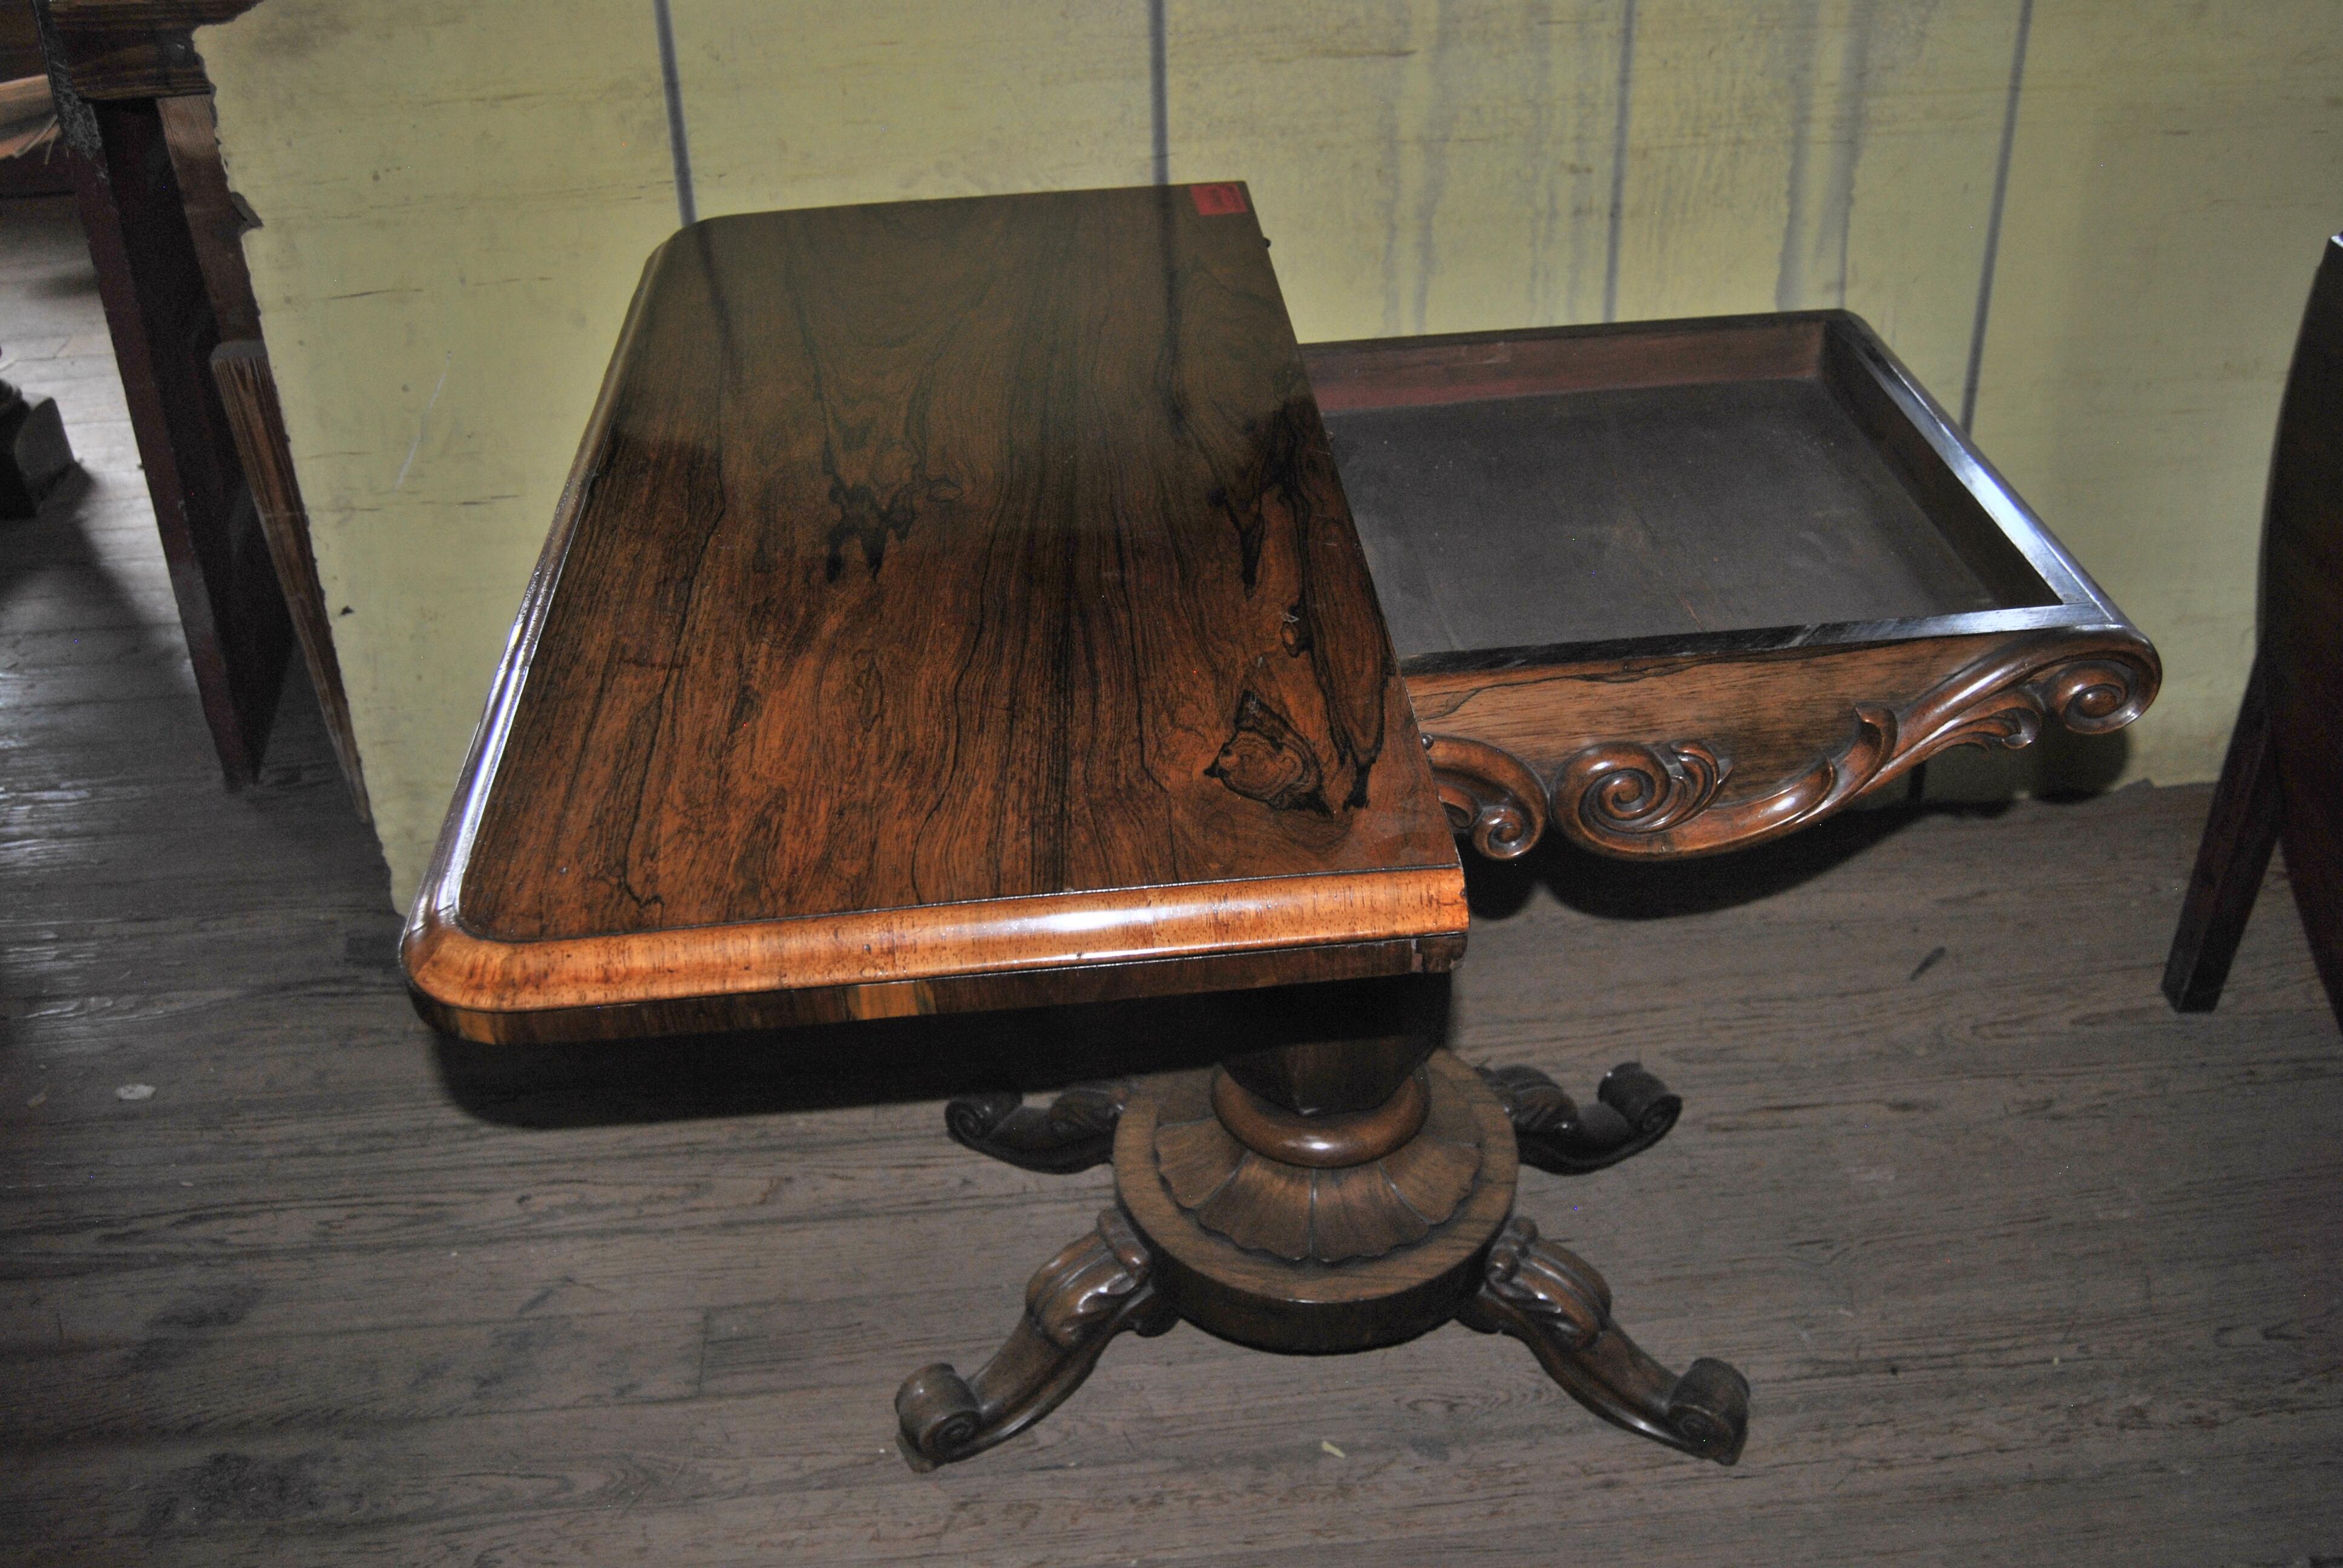 Dies ist ein Spieltisch aus Rosenholz, hergestellt in England um 1850. Der Deckel hat abgerundete Ecken und einen schön geformten Rand. Der Deckel lässt sich aufklappen und bietet Platz für Spielsteine, Karten usw. Die Platte lässt sich dann